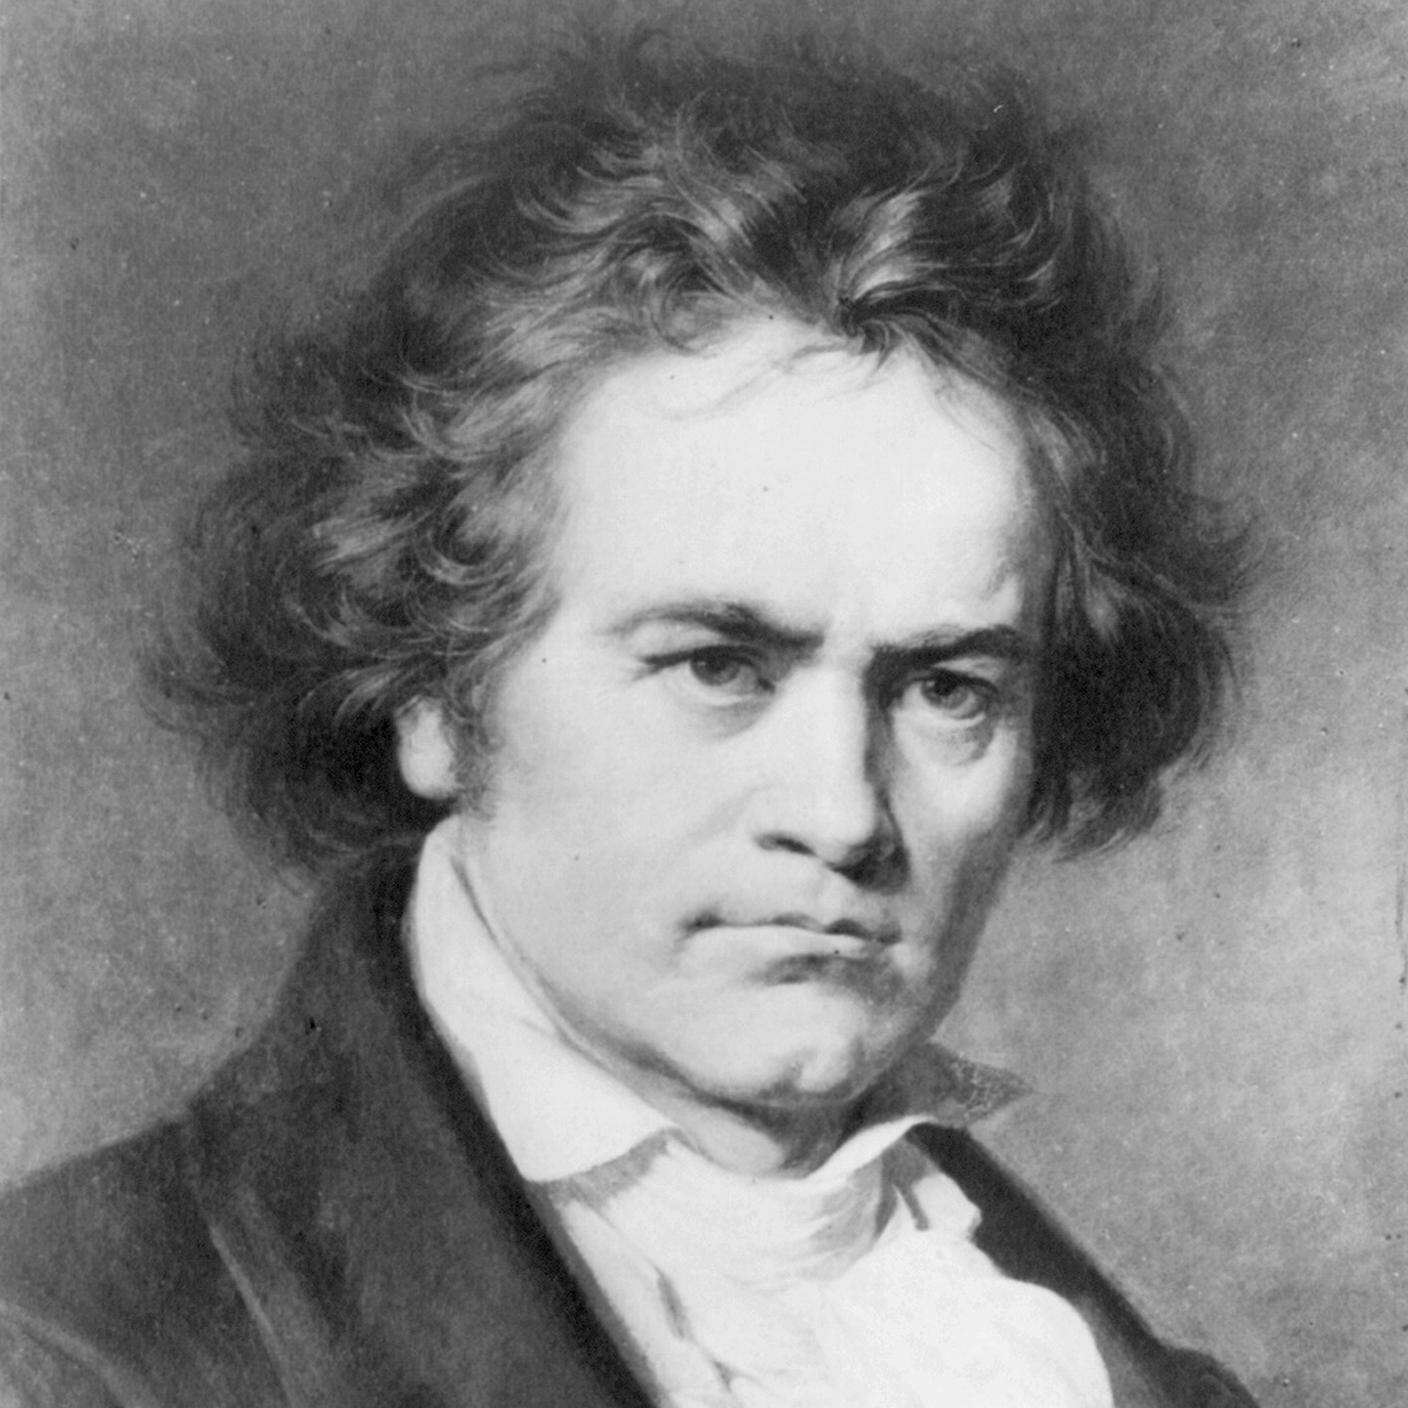 Ritratto di Beethoven eseguito da Carl Jaeger